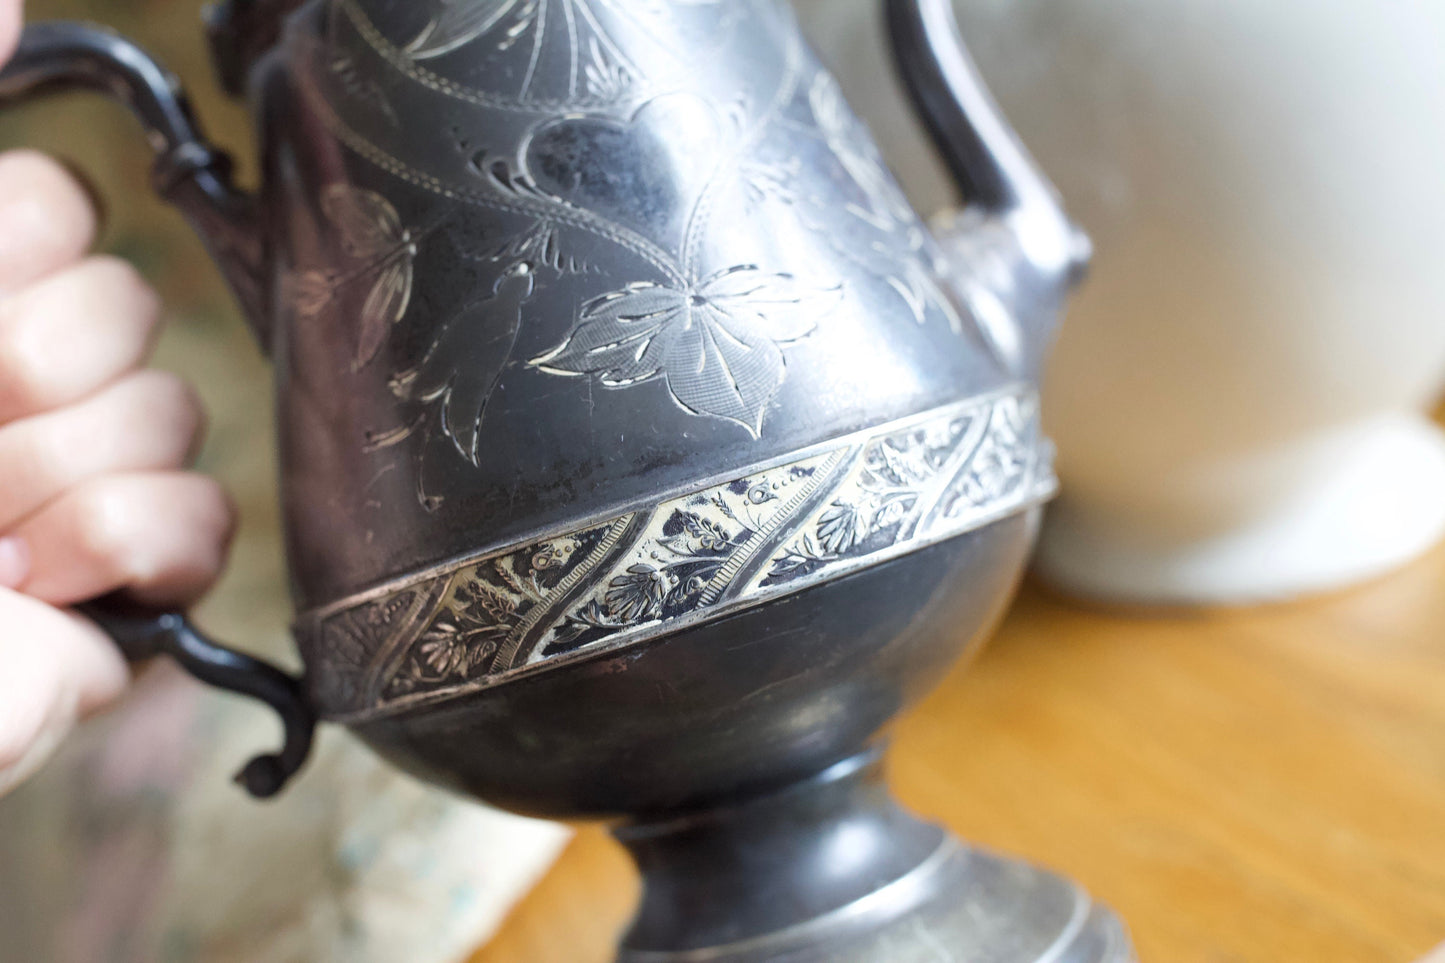 Antique TeaPot- Etched- Heart, Silver Antique Teapot-Pelton Bros & Co. Teapot Triple Plate